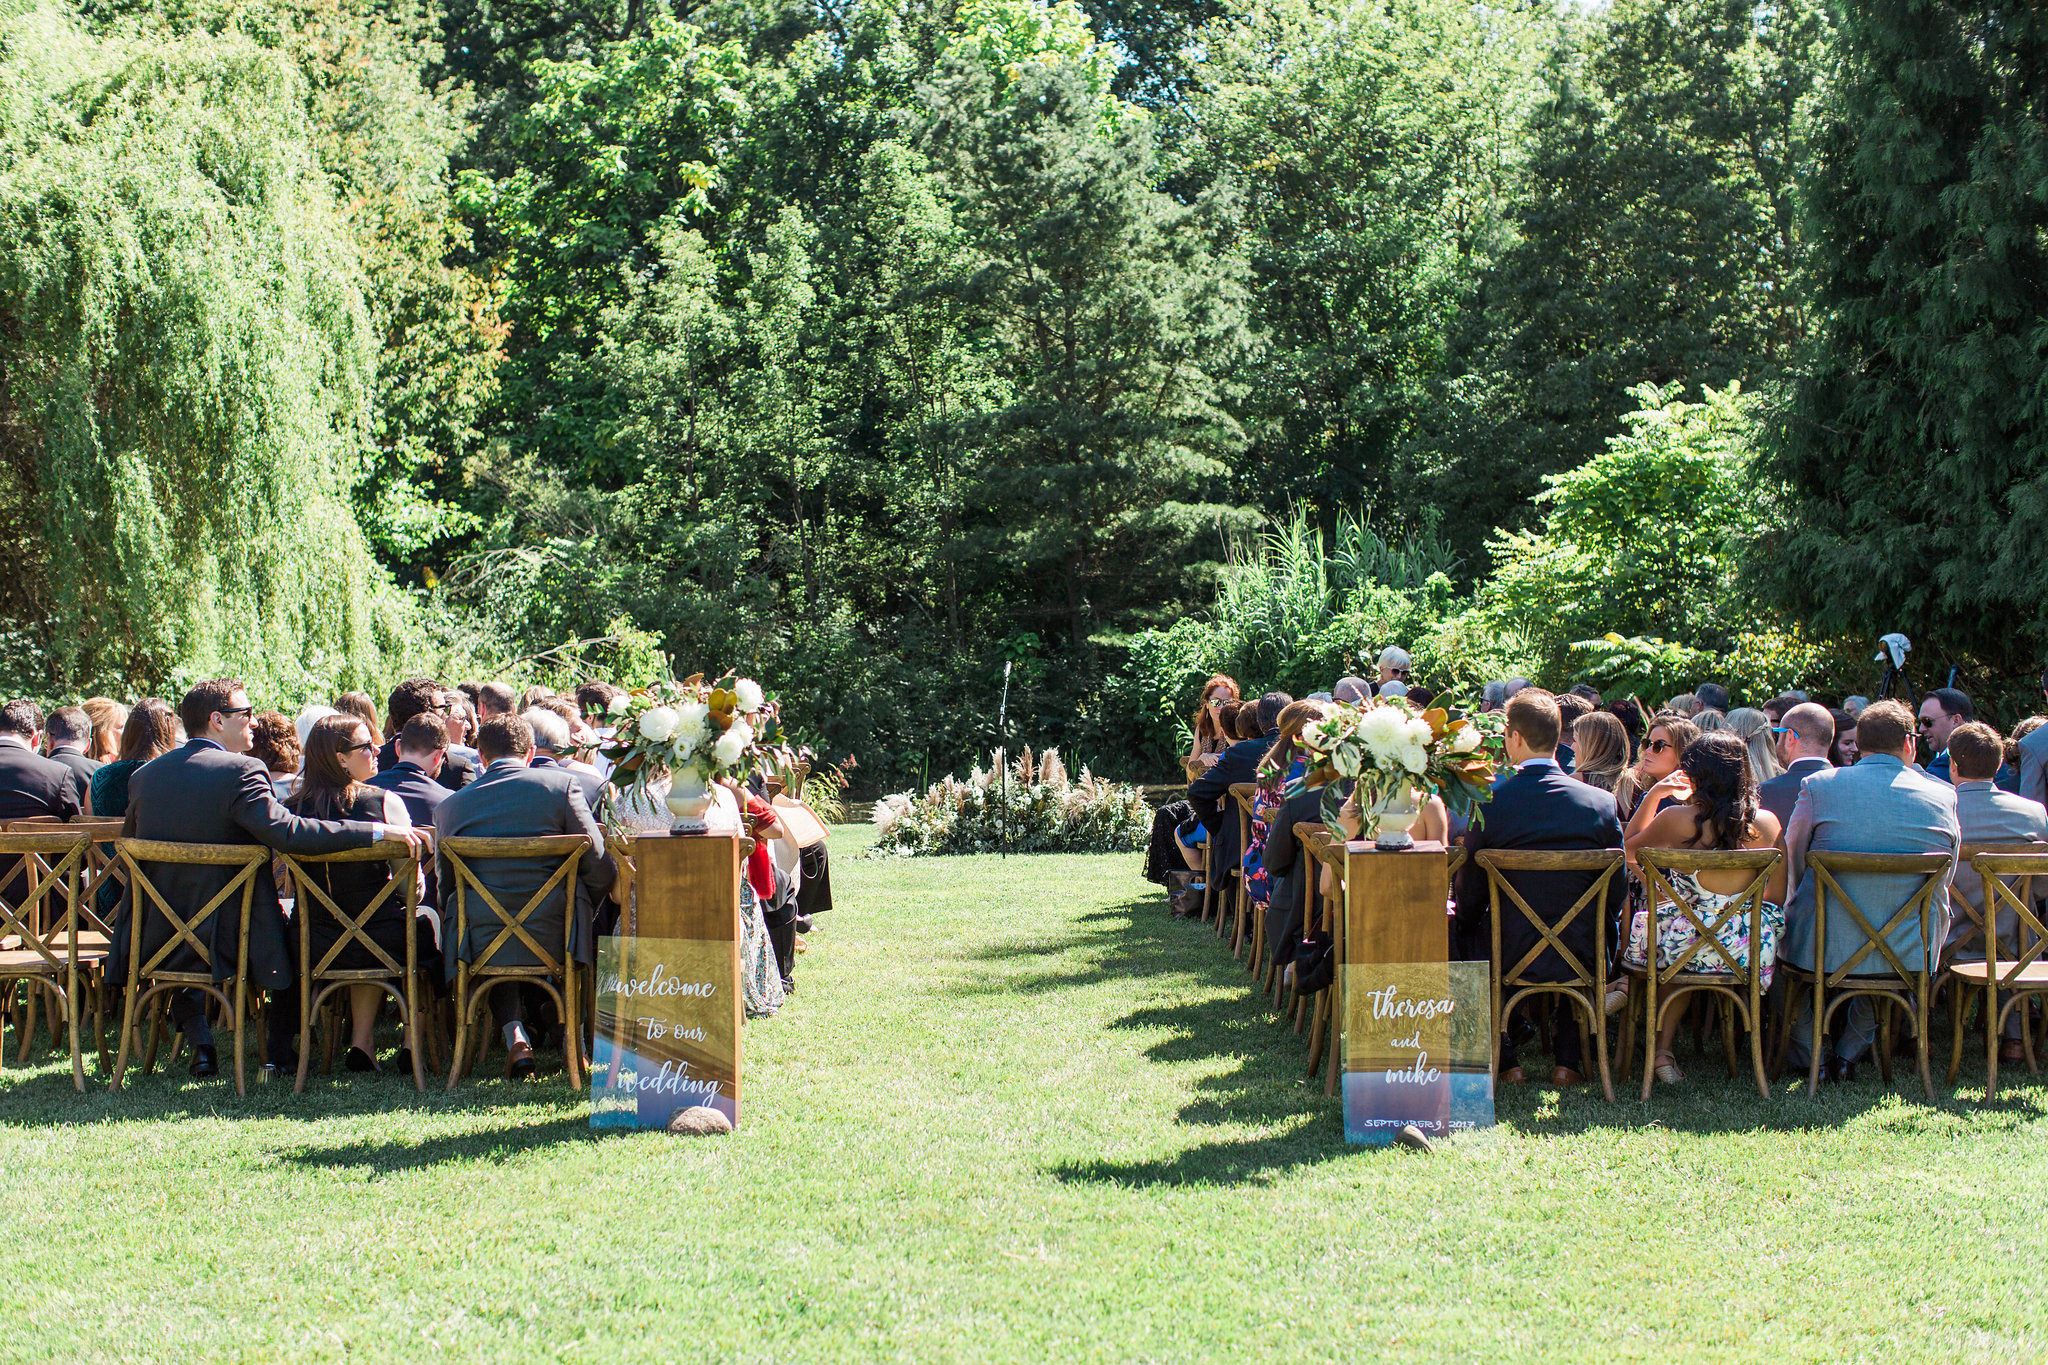 Fernwood Botanical Garden wedding ceremony setting